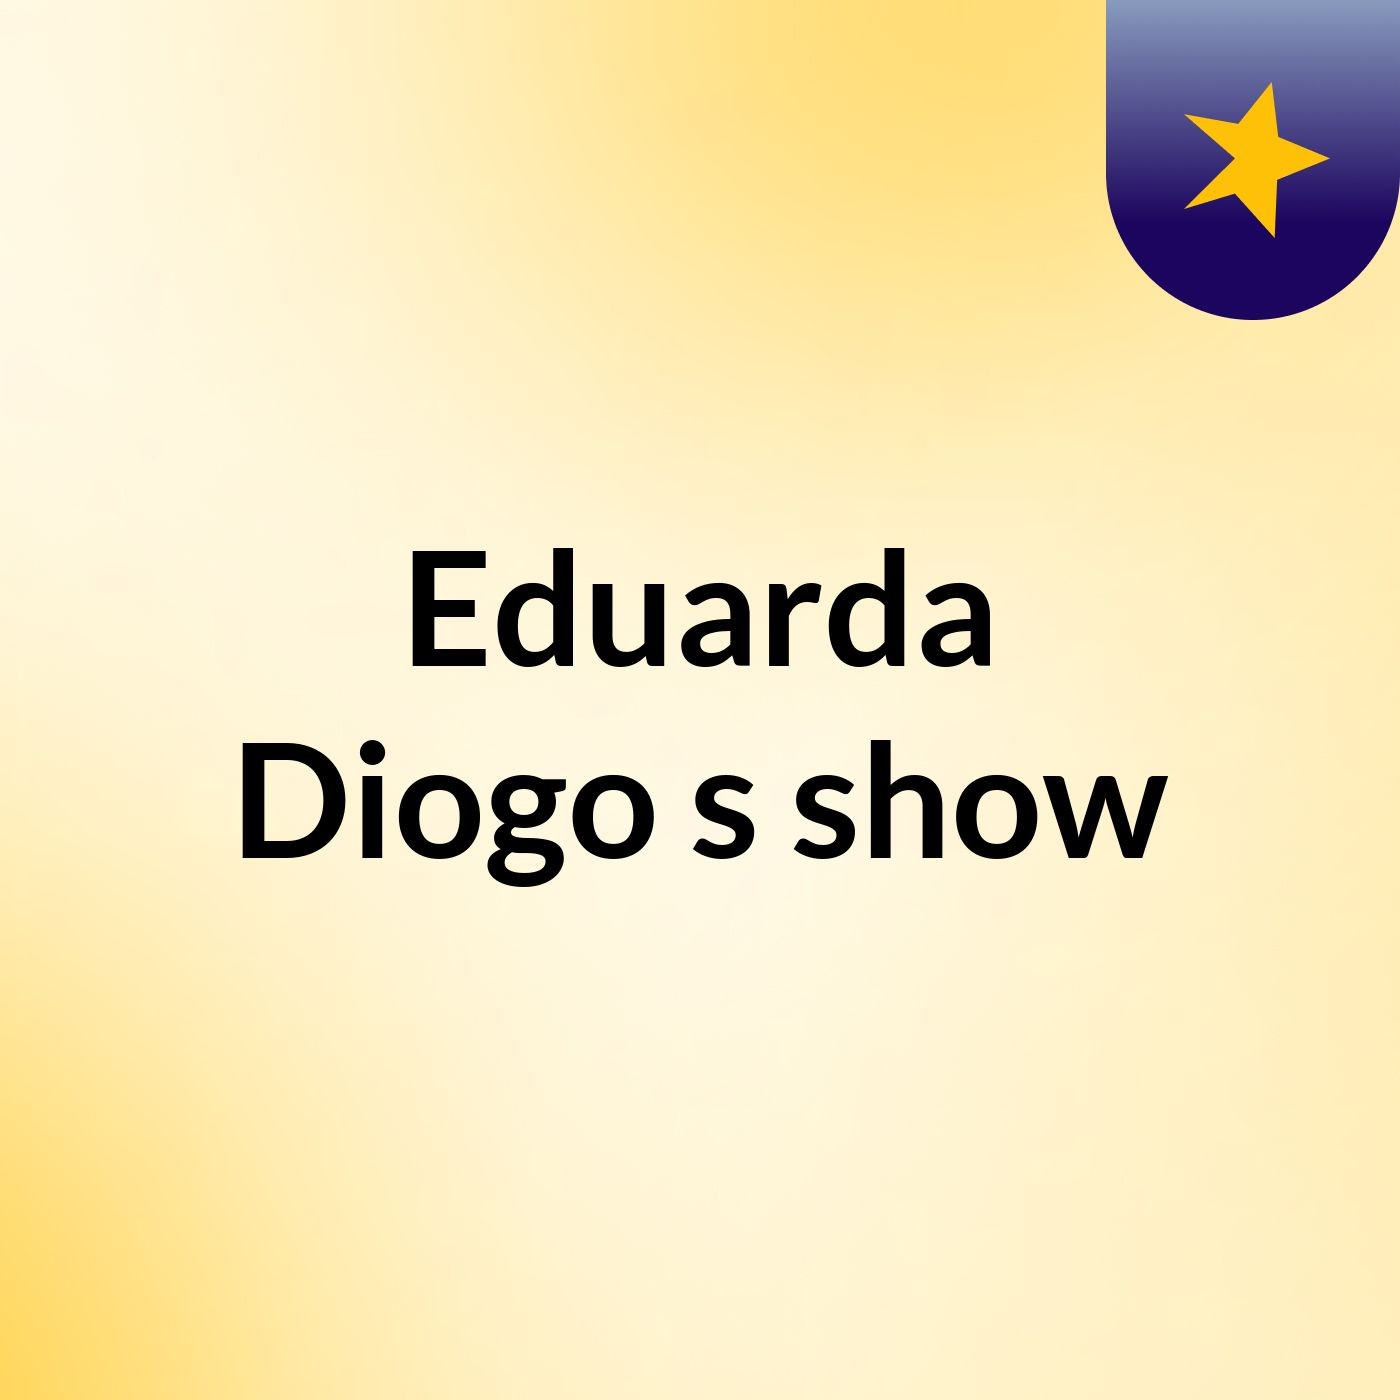 Eduarda Diogo's show